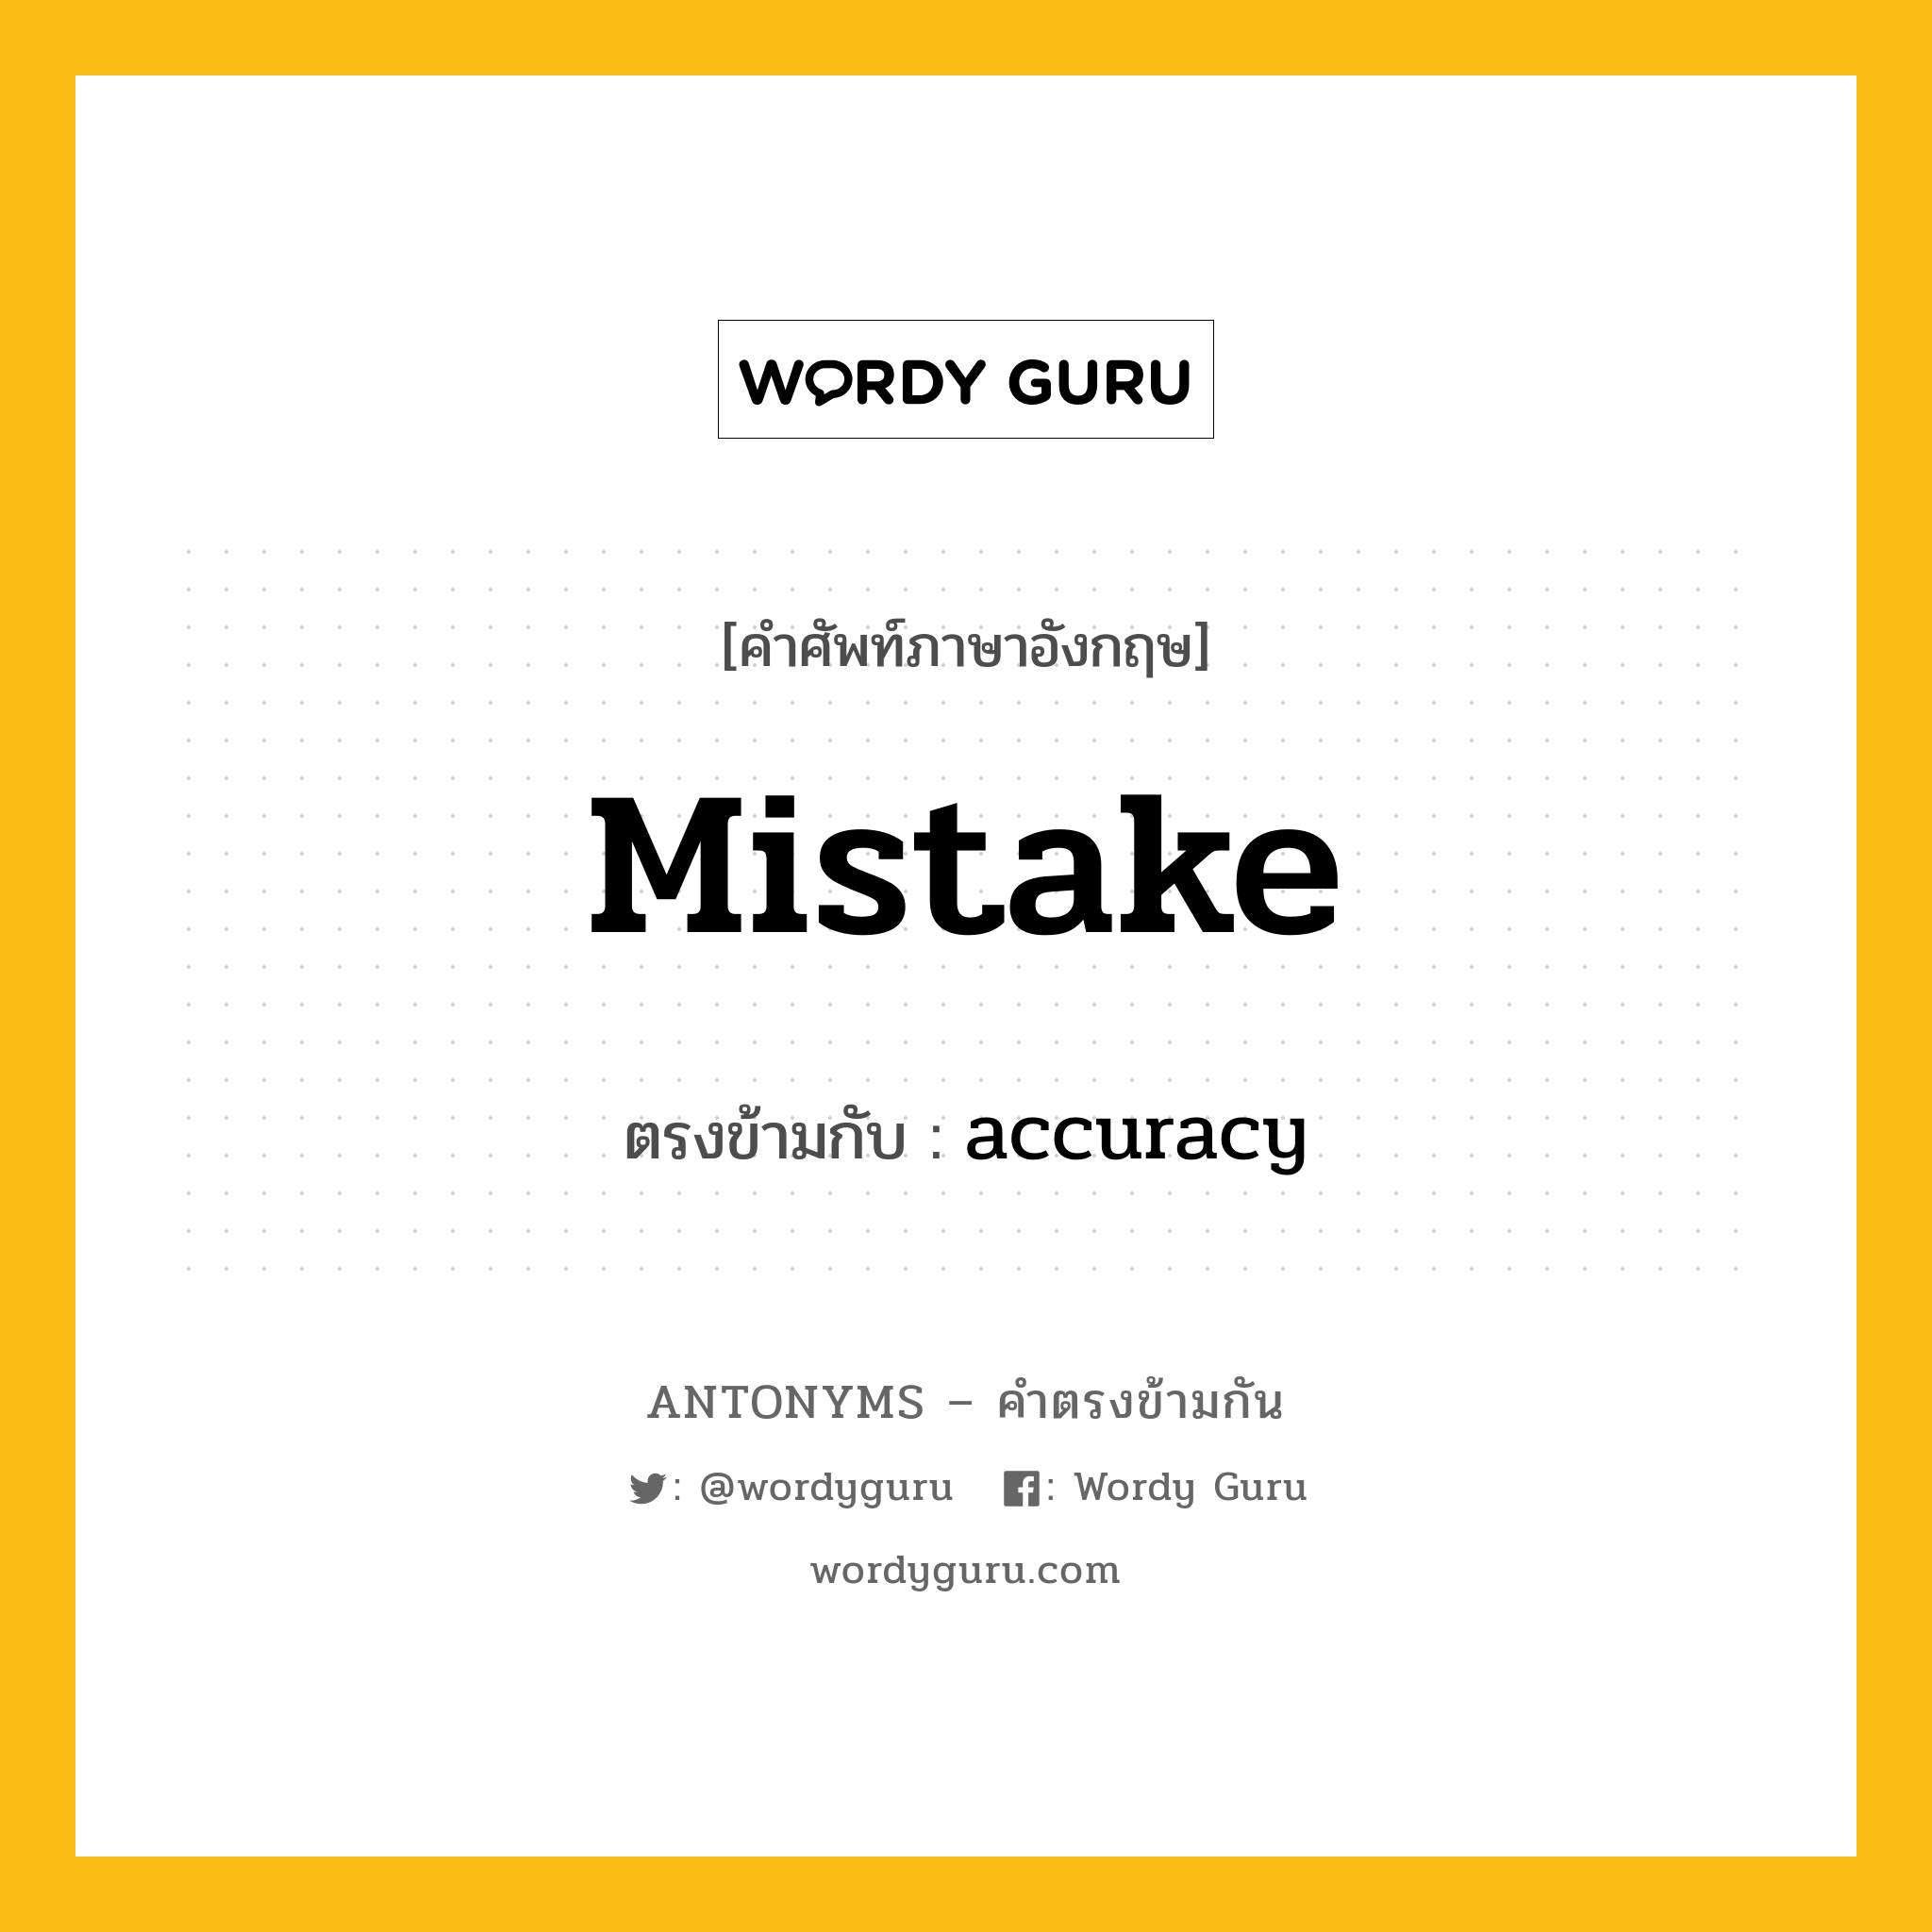 mistake เป็นคำตรงข้ามกับคำไหนบ้าง?, คำศัพท์ภาษาอังกฤษ mistake ตรงข้ามกับ accuracy หมวด accuracy